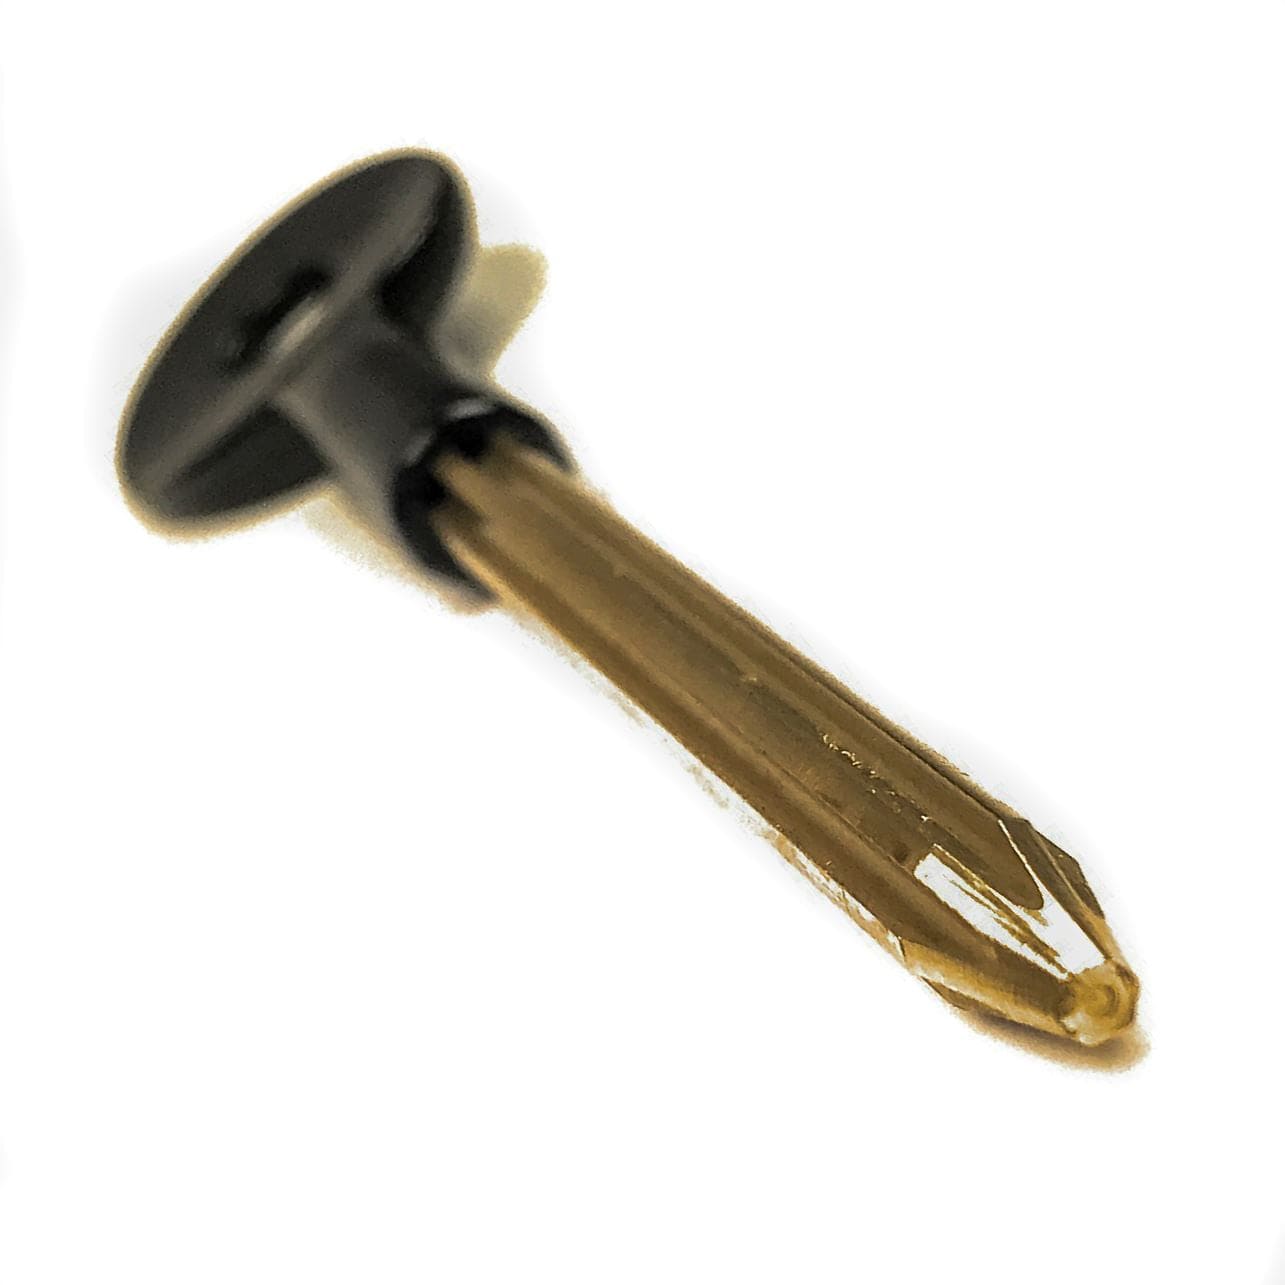 Security Door Bolt Key Extra Long Rack Bolts And Chubb Utility Keys Thunderfix 100183